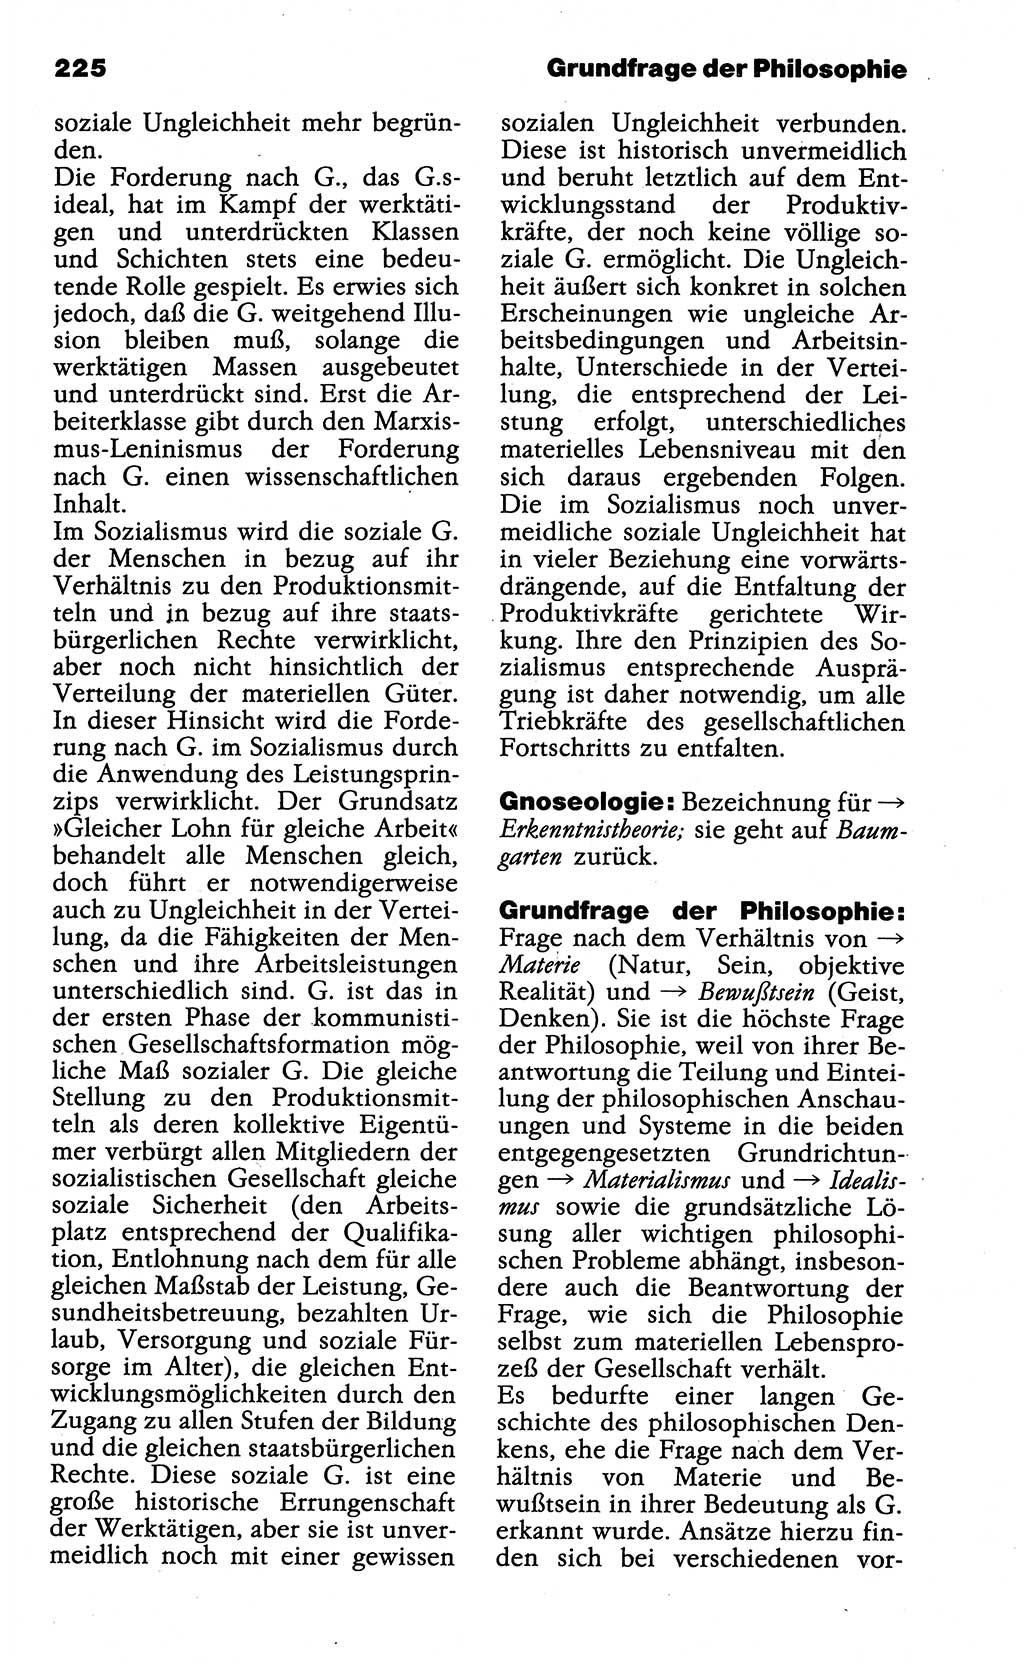 Wörterbuch der marxistisch-leninistischen Philosophie [Deutsche Demokratische Republik (DDR)] 1985, Seite 225 (Wb. ML Phil. DDR 1985, S. 225)